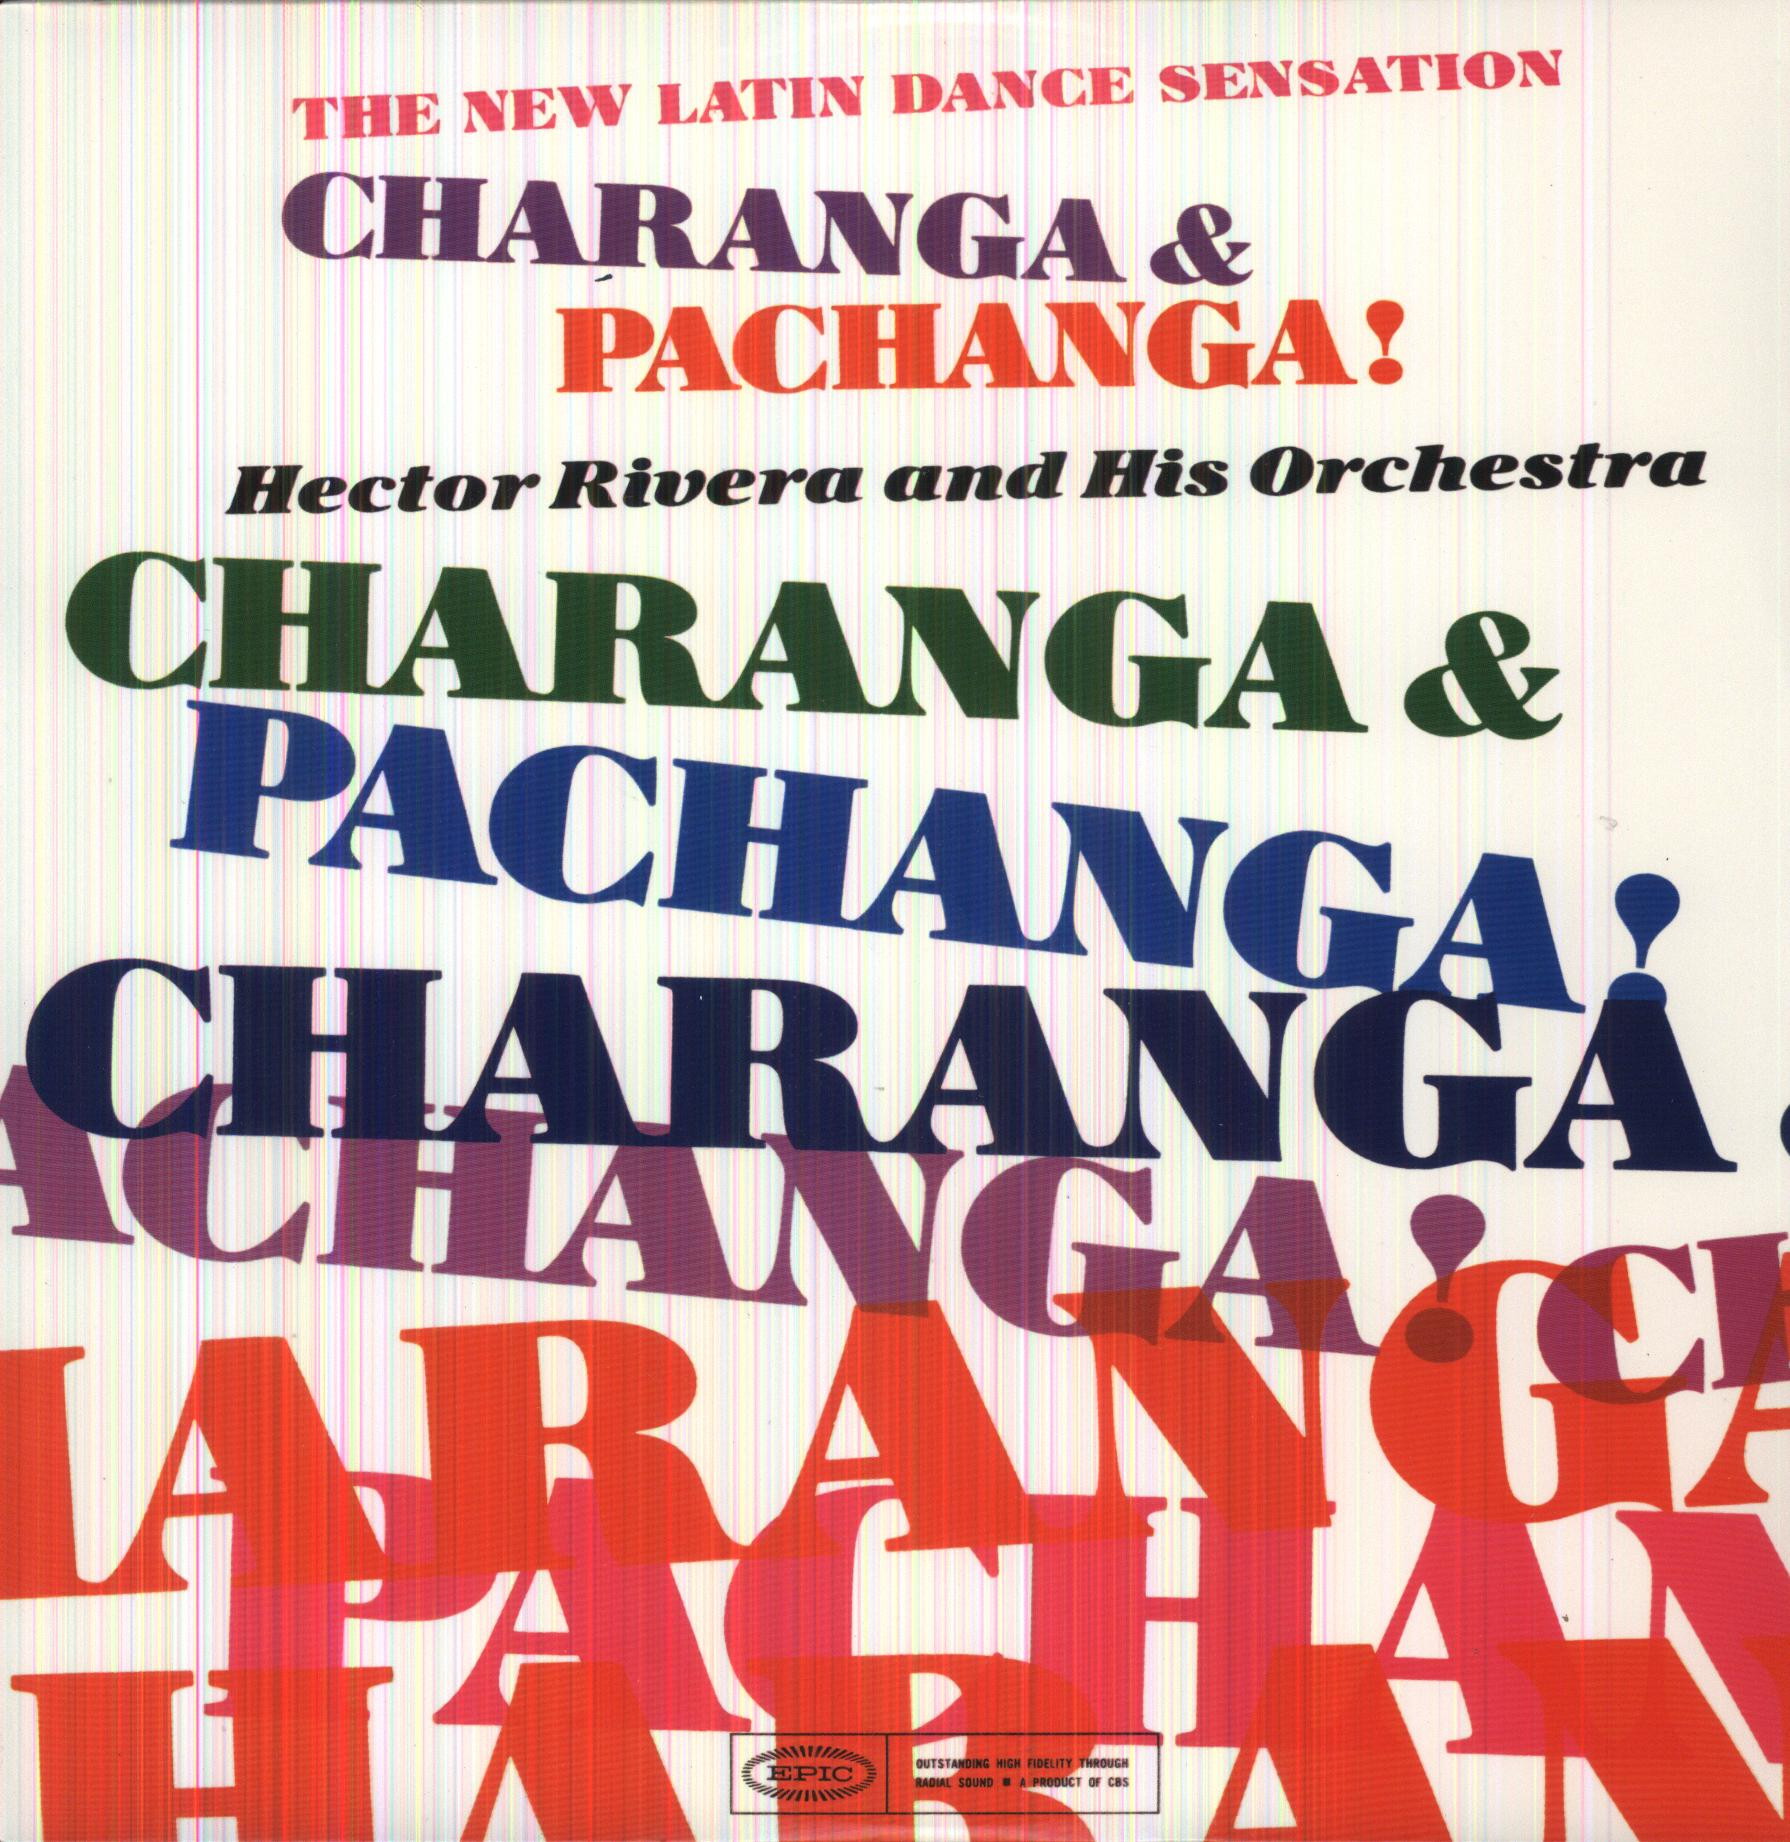 CHARANGA & PACHANGA